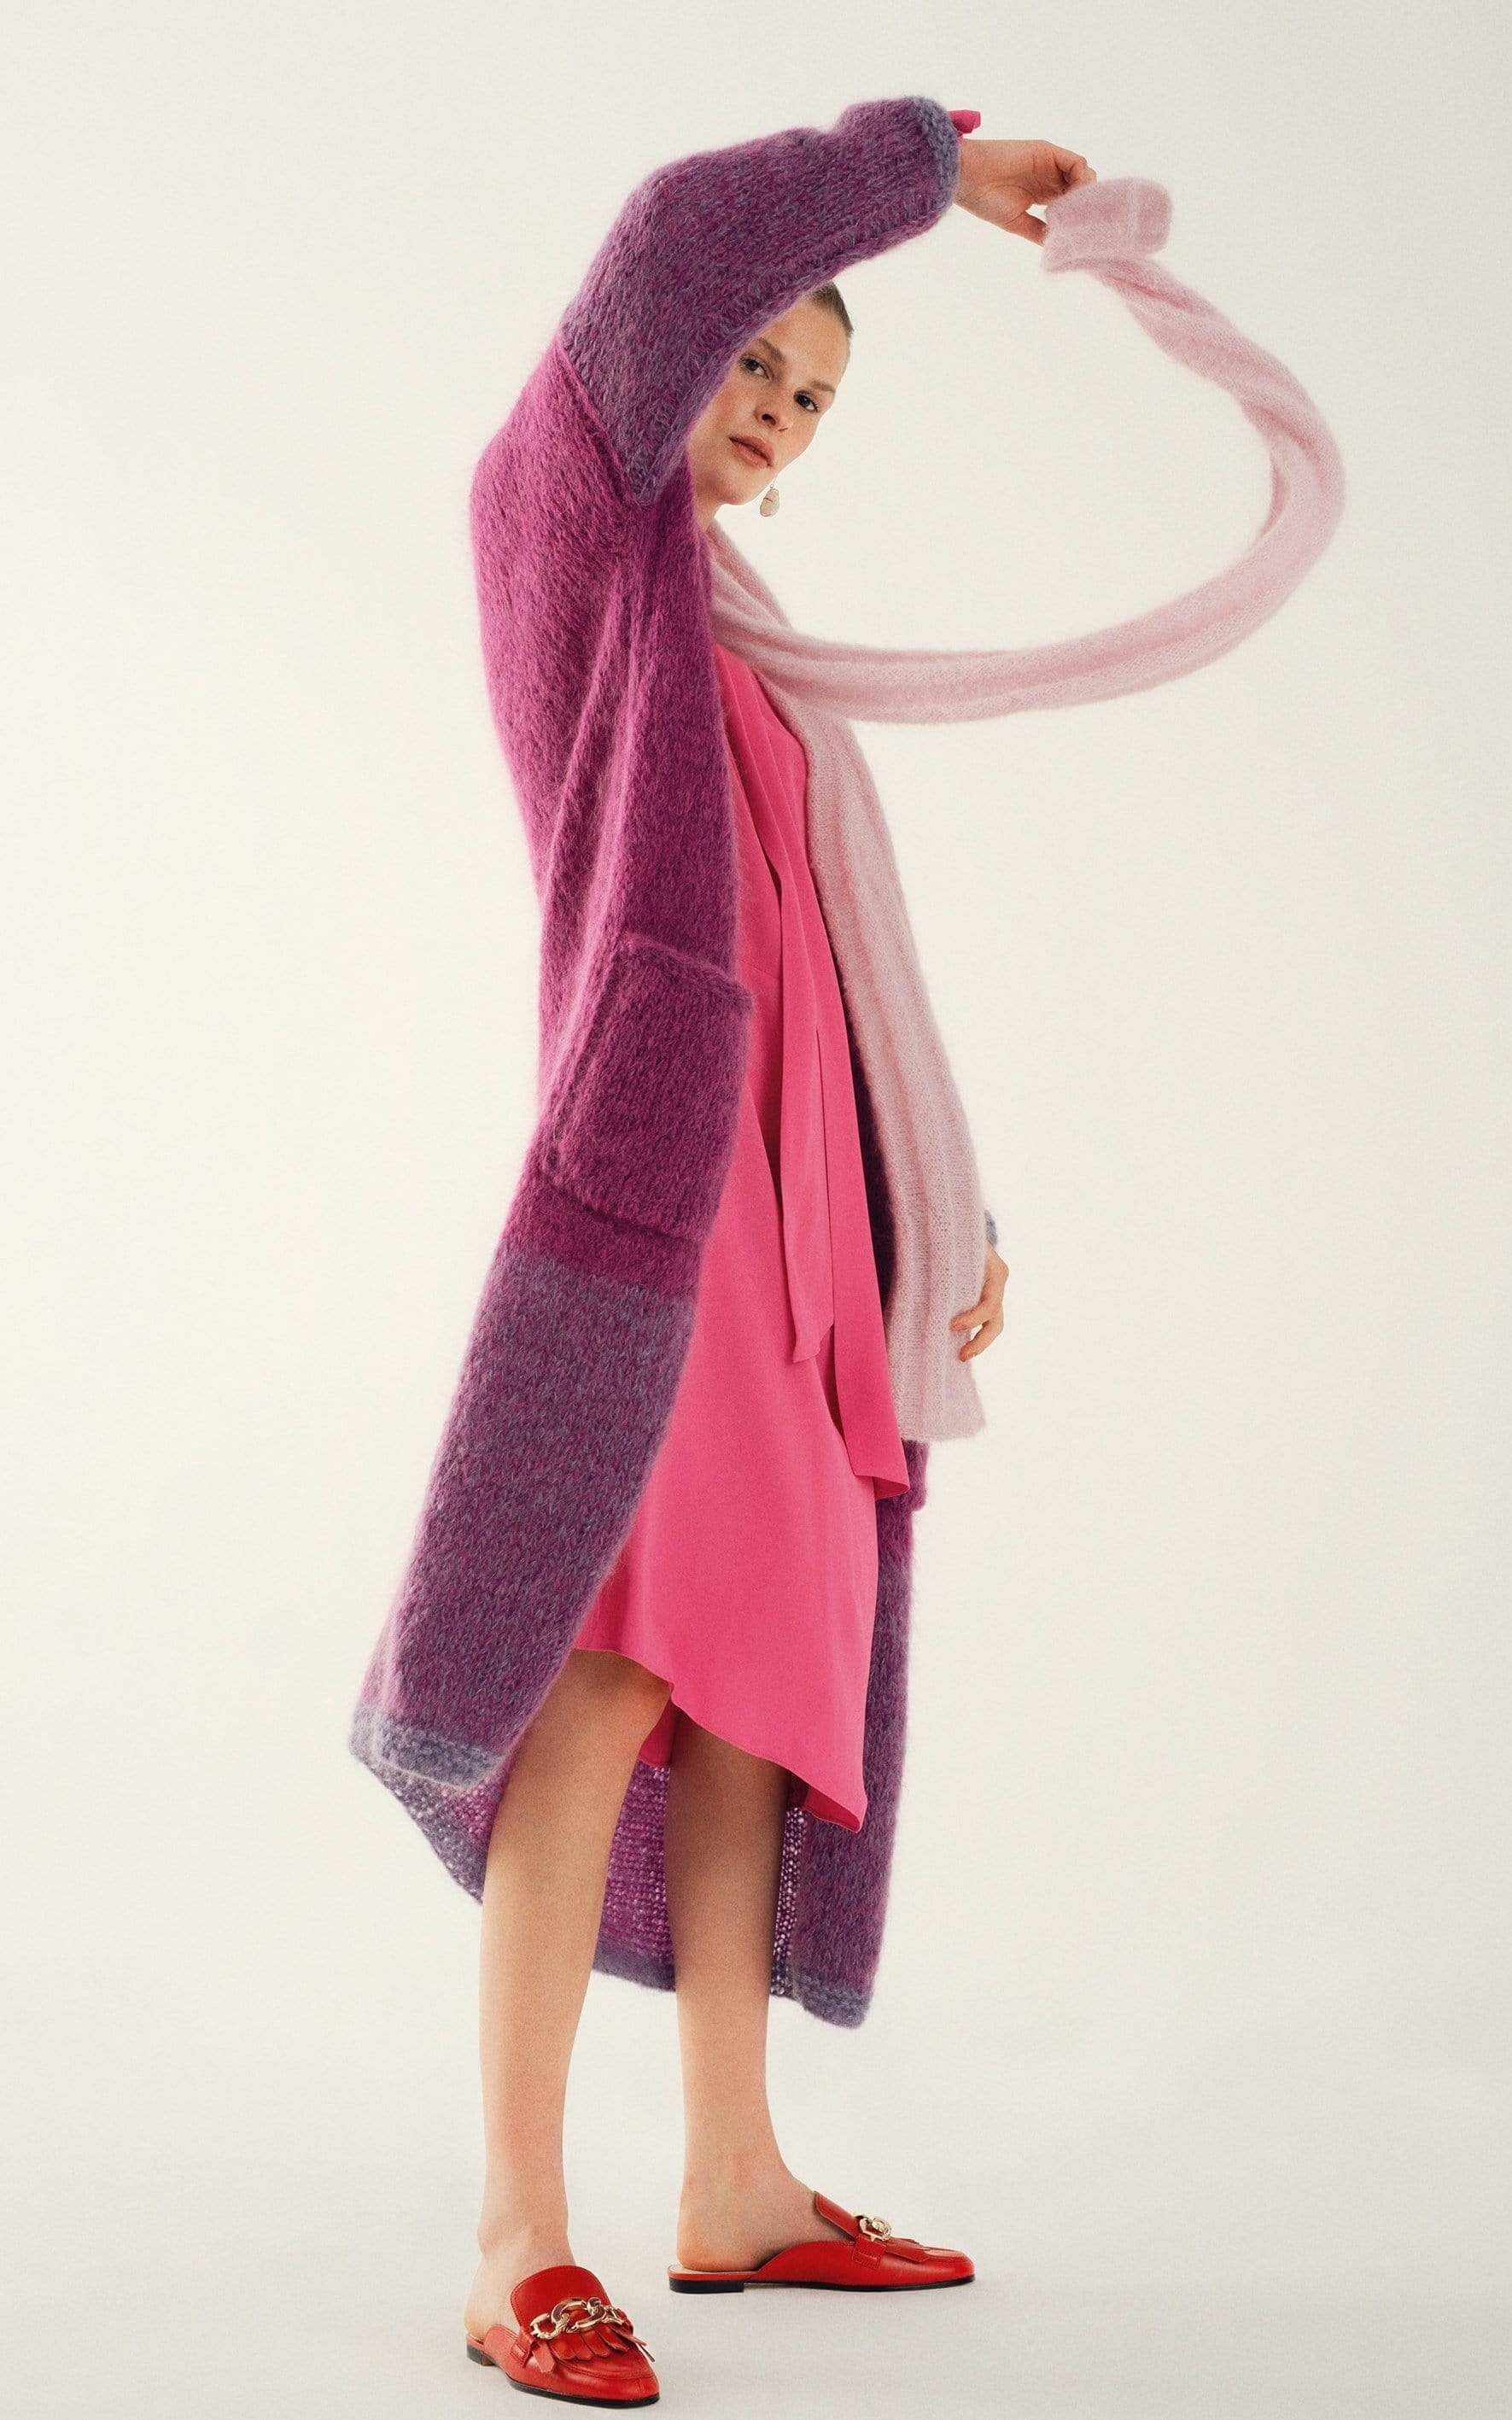 Dünner Schal - Strickset von LANA GROSSA jetzt online kaufen bei OONIQUE